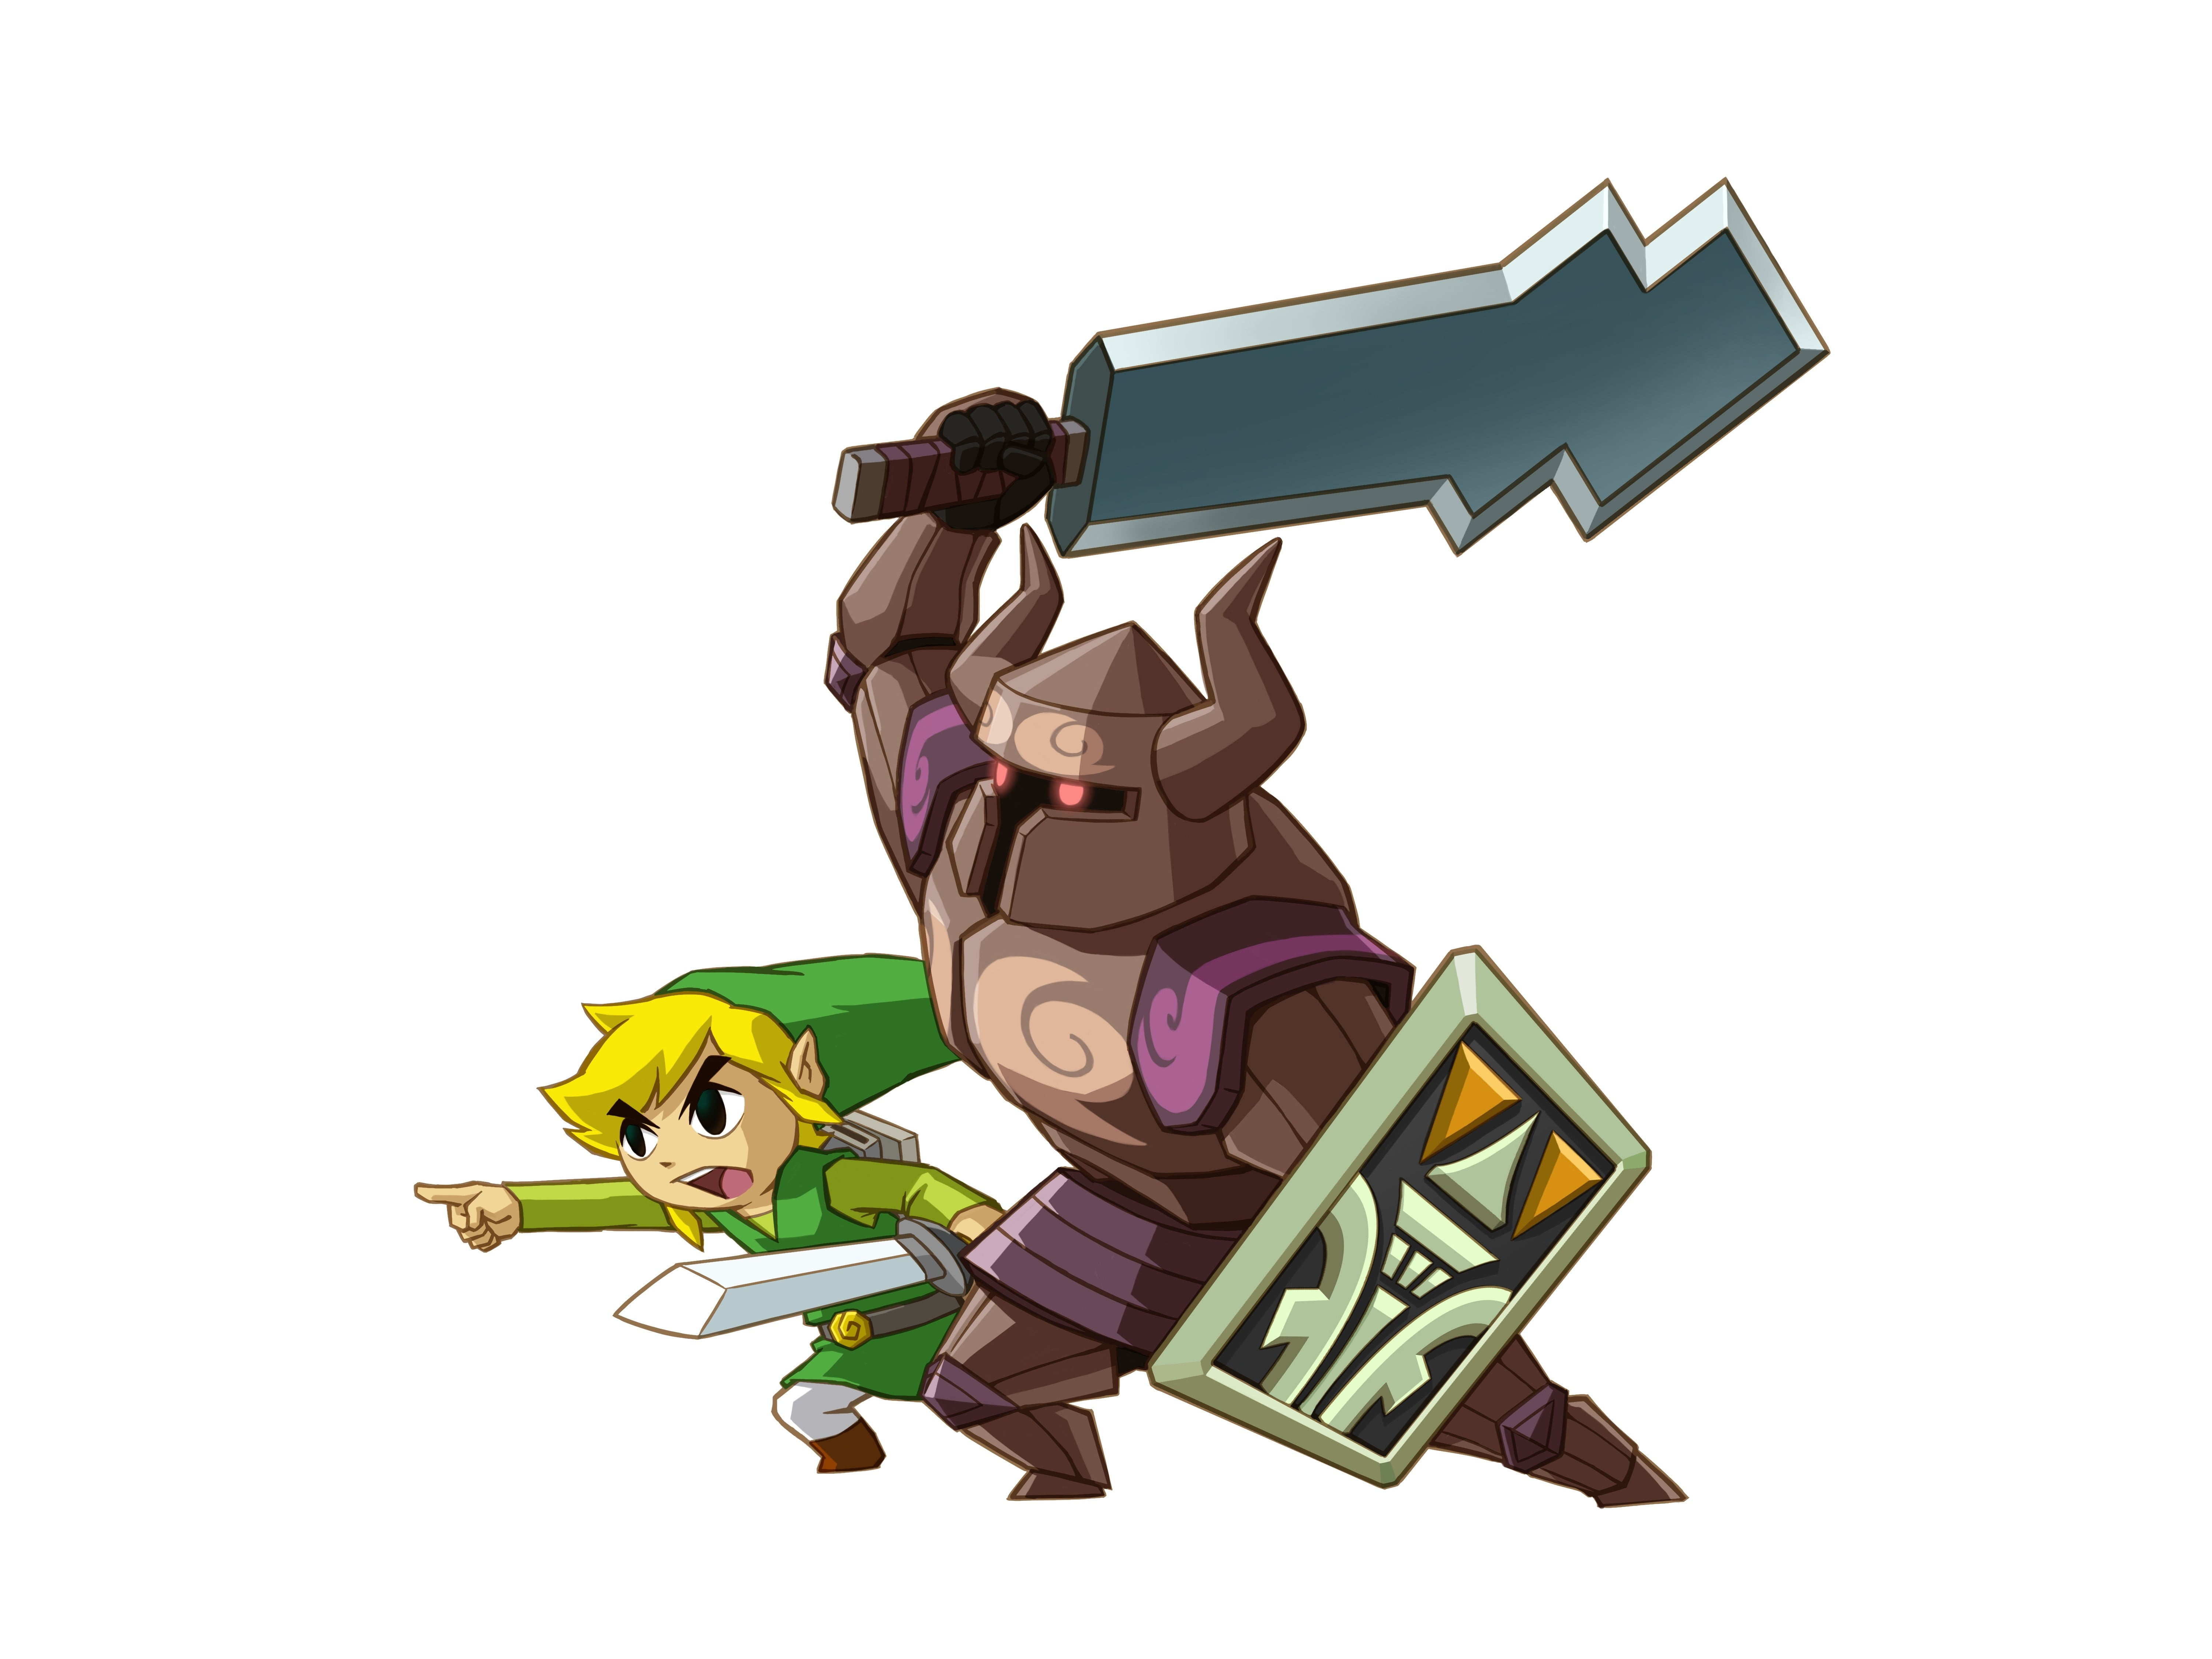 Legend of Zelda Link and Warrior illustration, The Legend of Zelda: Spirit Tracks, Link